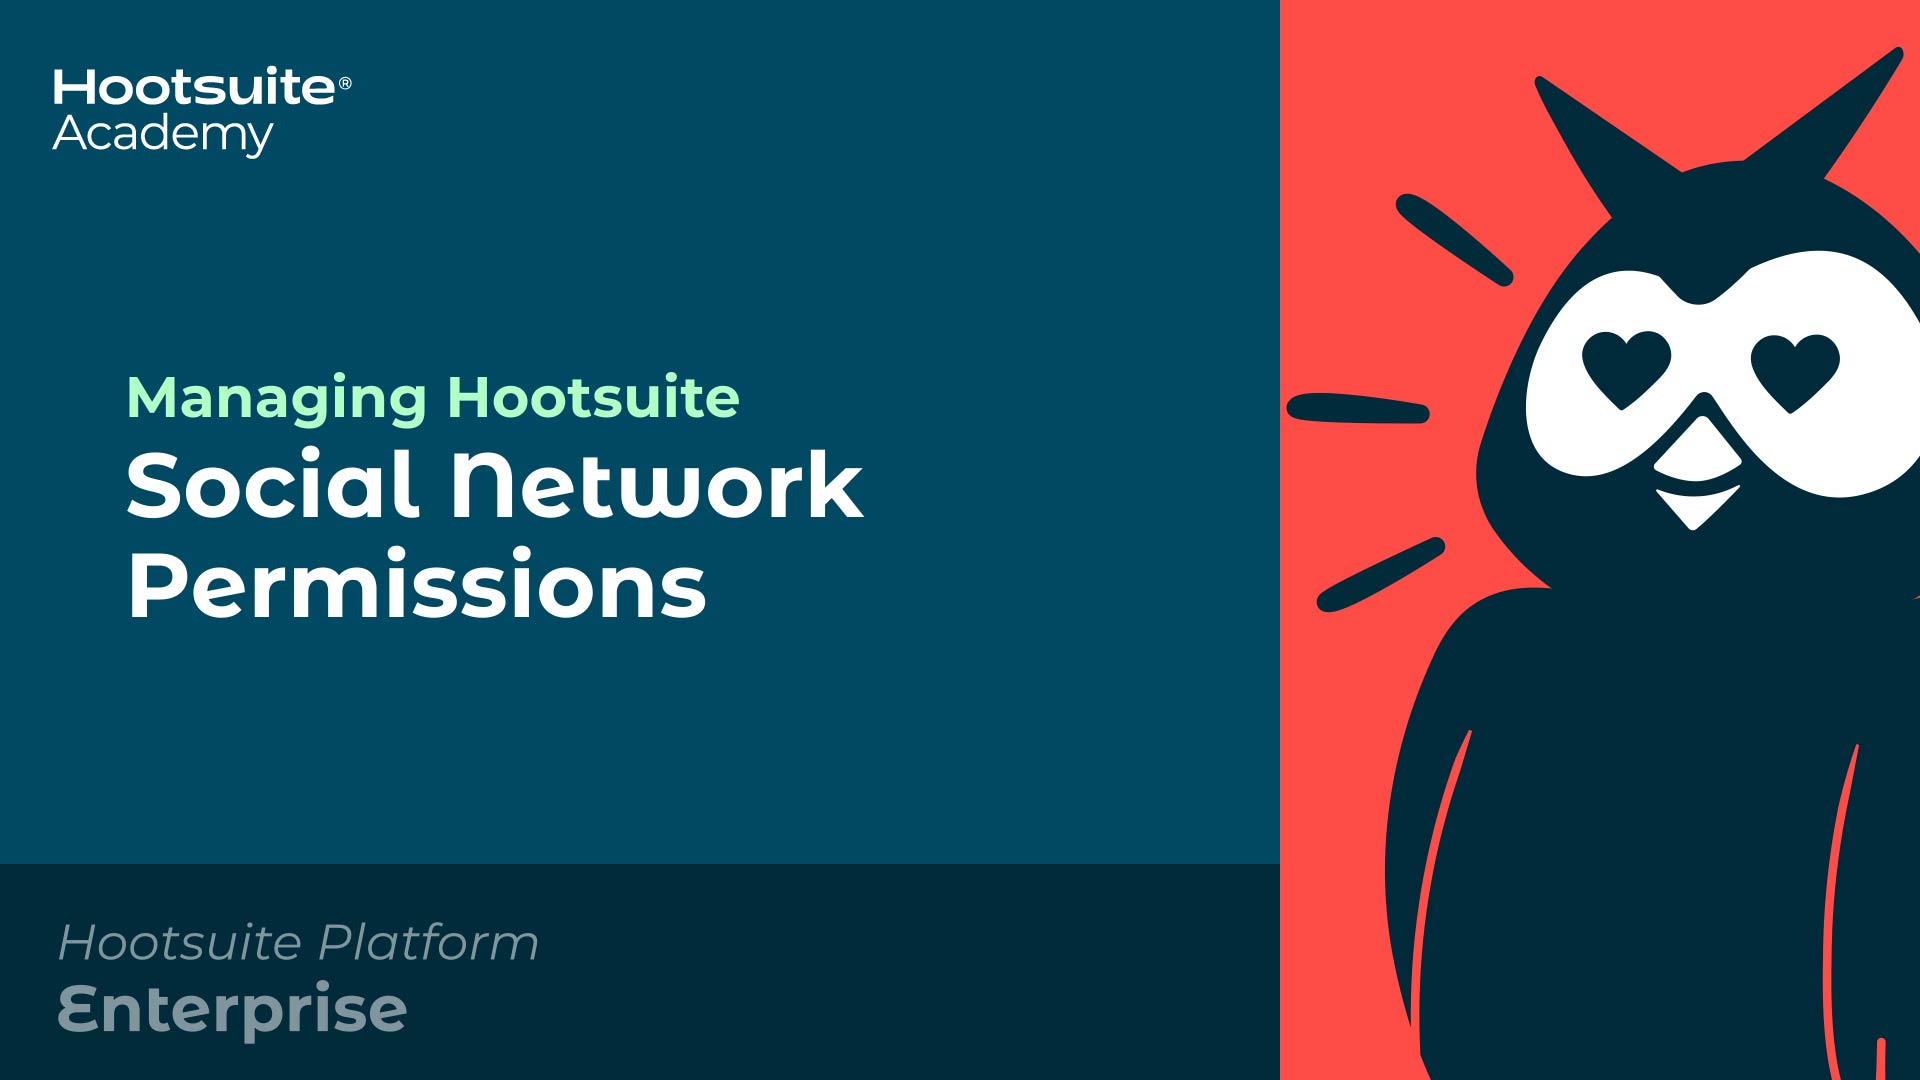 Vídeo sobre gerenciamento de permissões de redes sociais da Hootsuite.